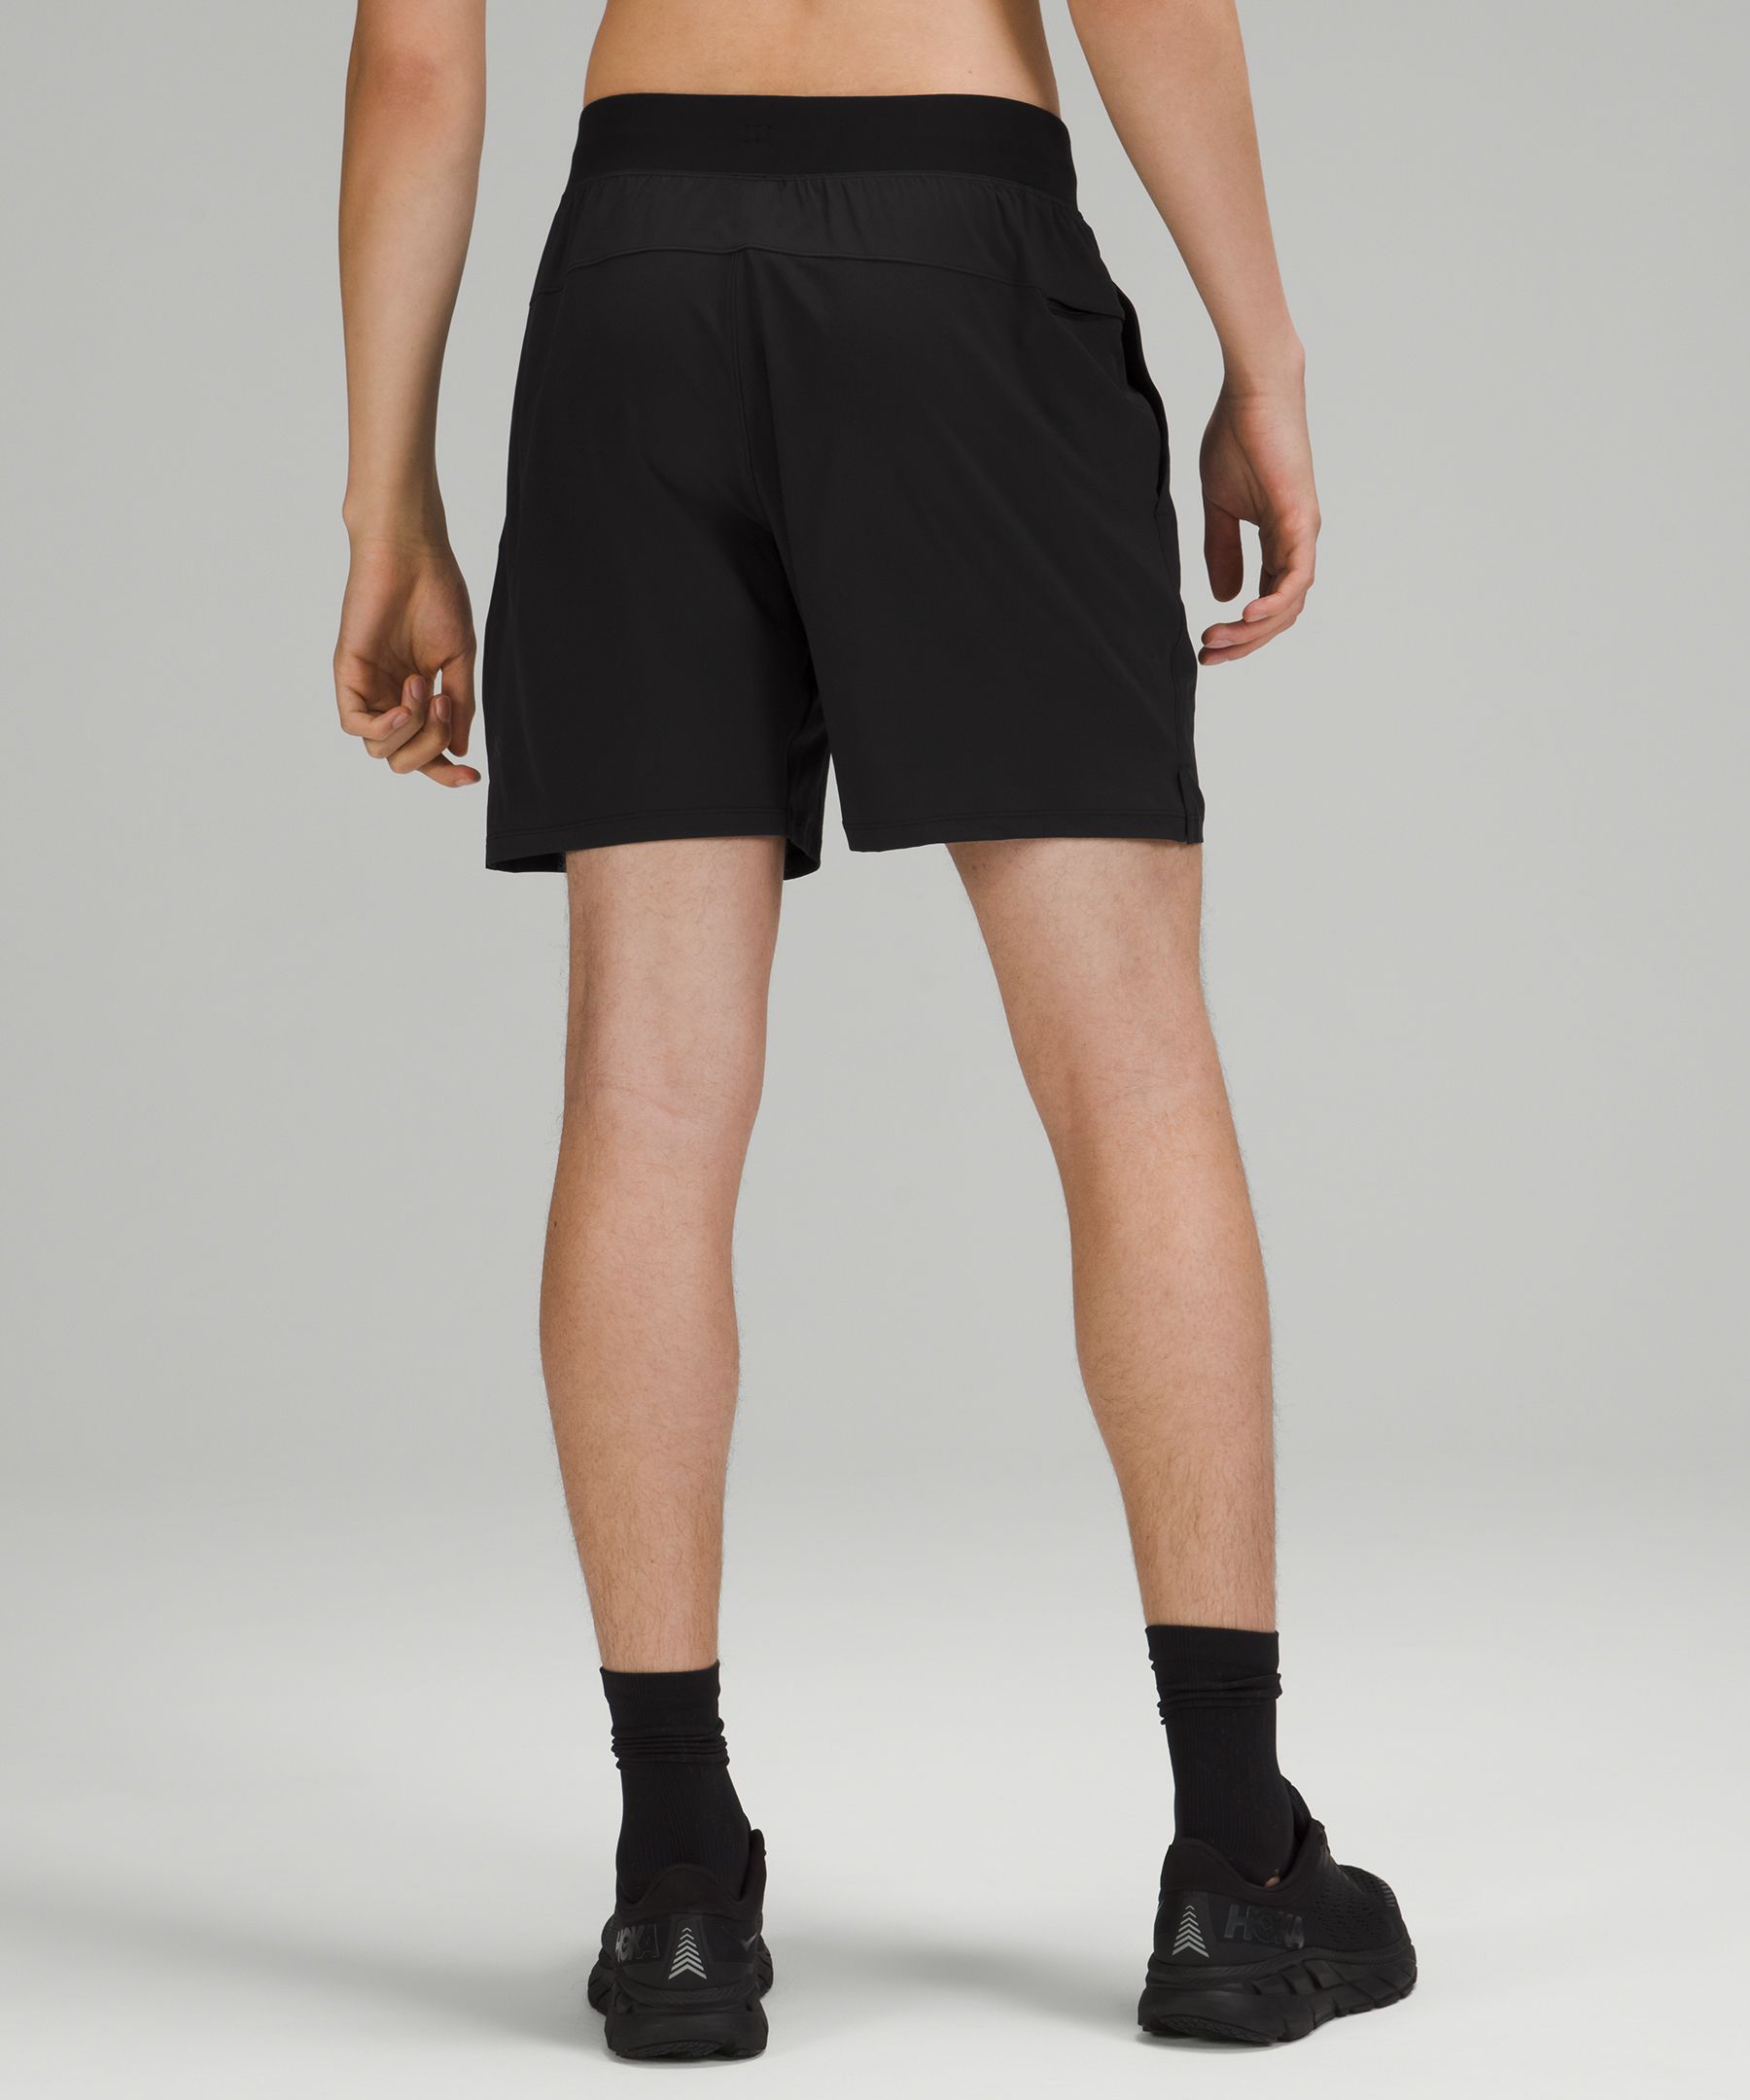 lululemon compression shorts men